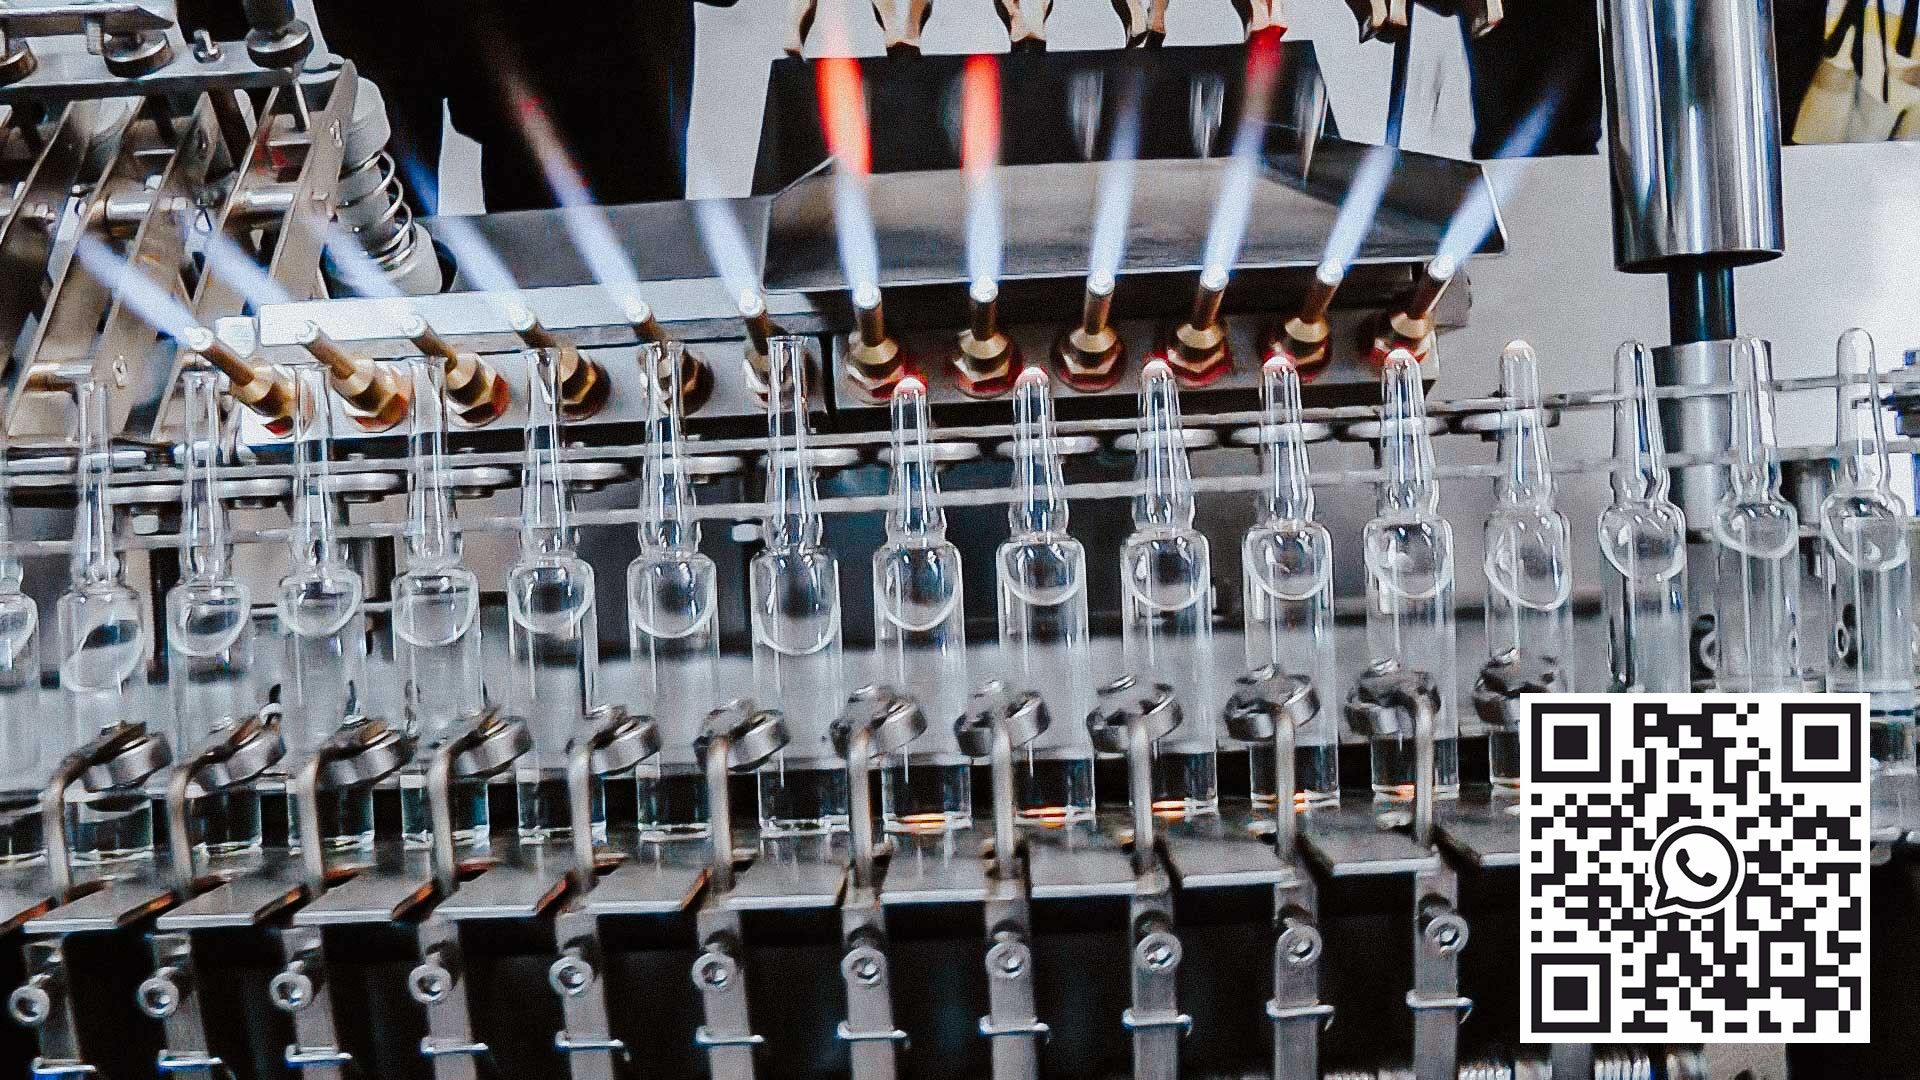 Machine de remplissage et de scellage automatique pour ampoules en verre avec des médicaments pharmaceutiques